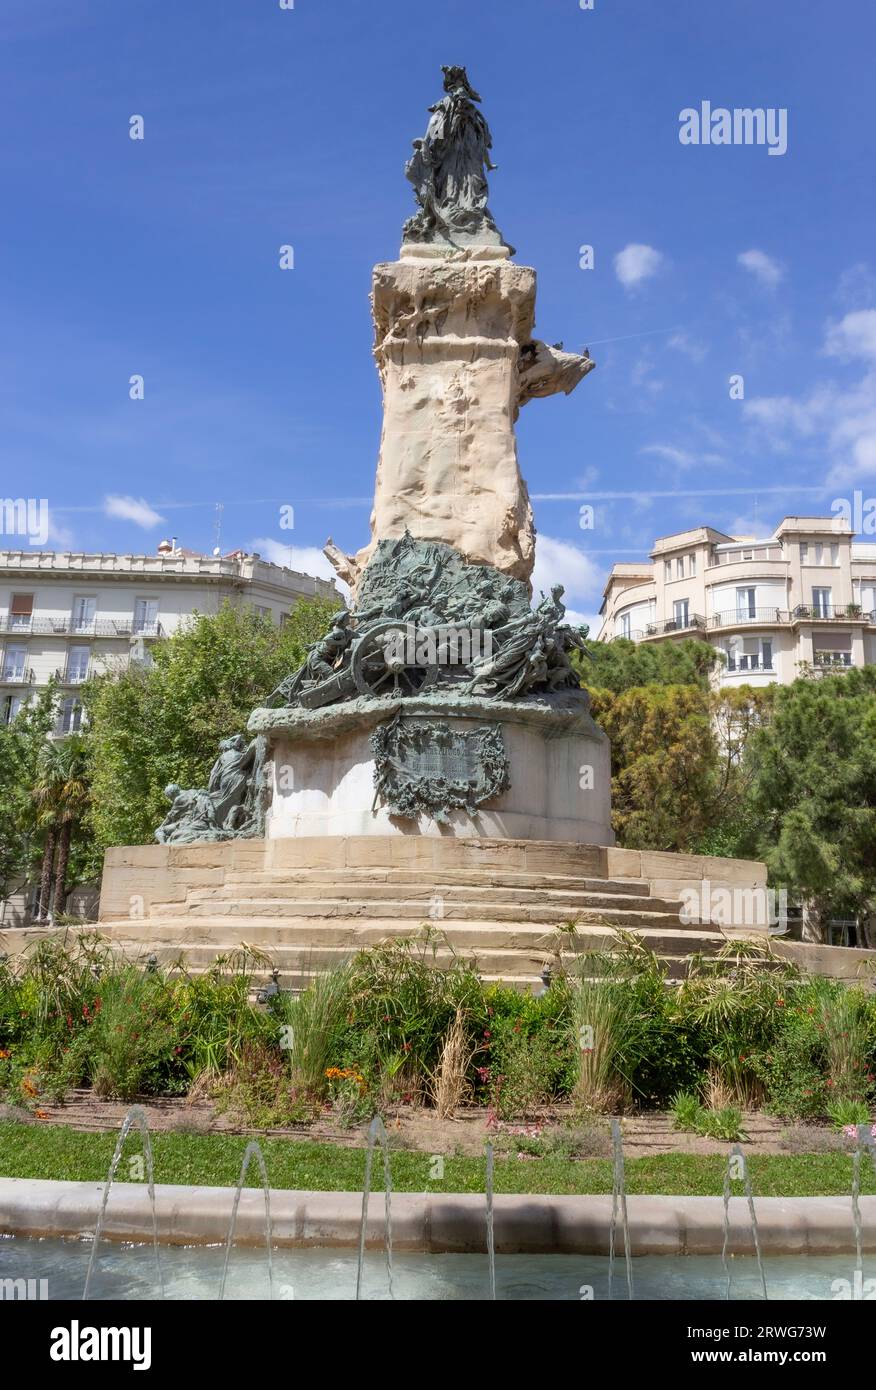 Plaza de los Sitios, Zaragoza, Aragon, Spanien. El Monumento a los Sitios de Zaragoza oder Denkmal für die Belagerung von Zaragoza. Skulpturengruppe in s Stockfoto